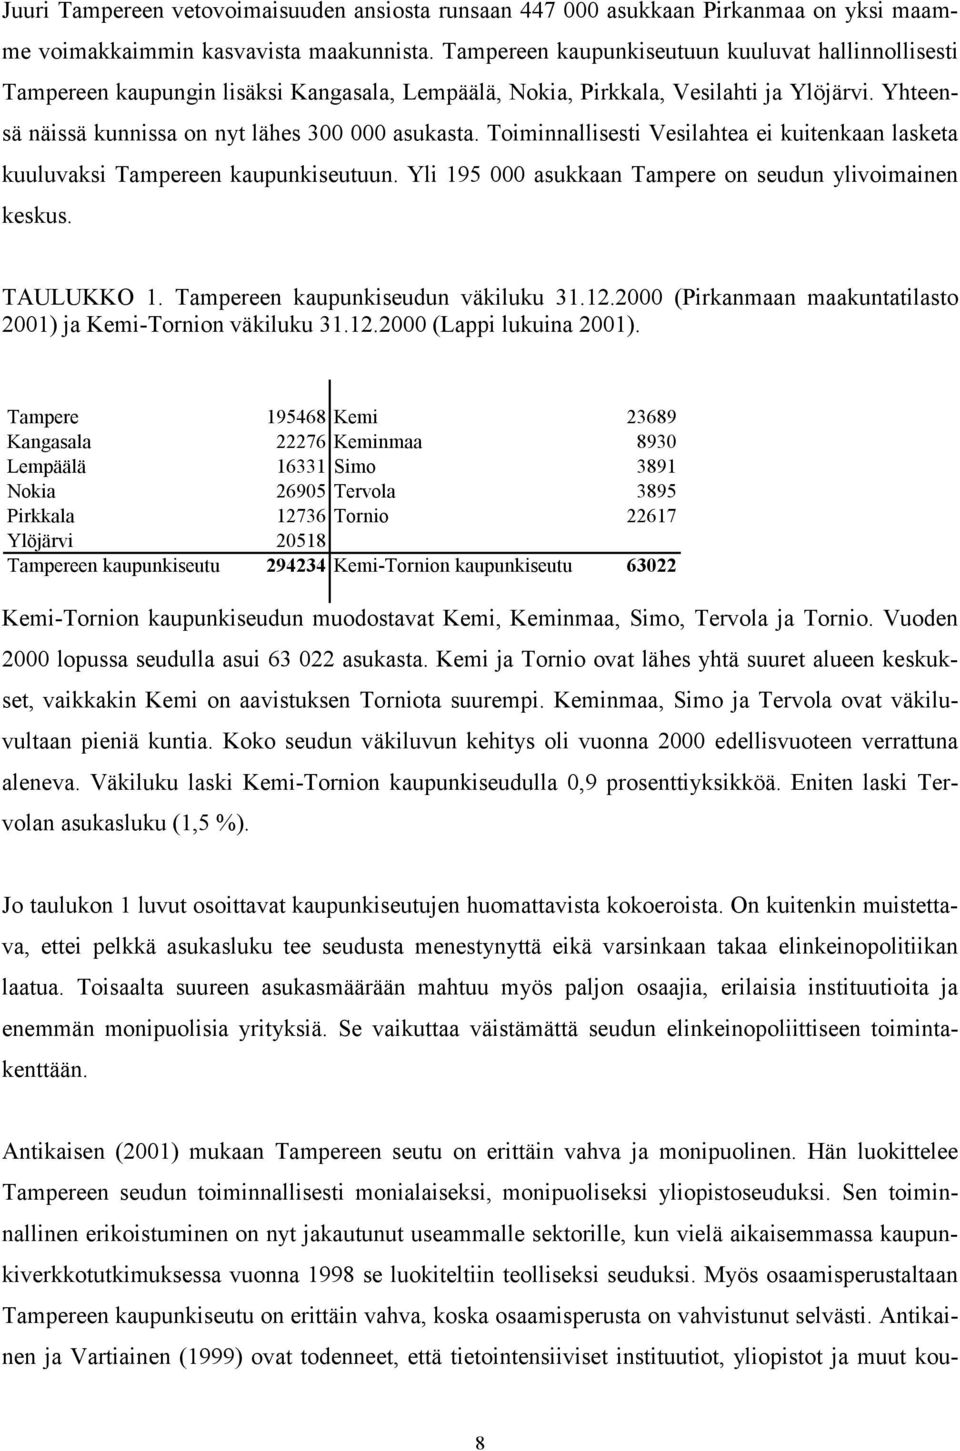 Toiminnallisesti Vesilahtea ei kuitenkaan lasketa kuuluvaksi Tampereen kaupunkiseutuun. Yli 195 000 asukkaan Tampere on seudun ylivoimainen keskus. TAULUKKO 1. Tampereen kaupunkiseudun väkiluku 31.12.